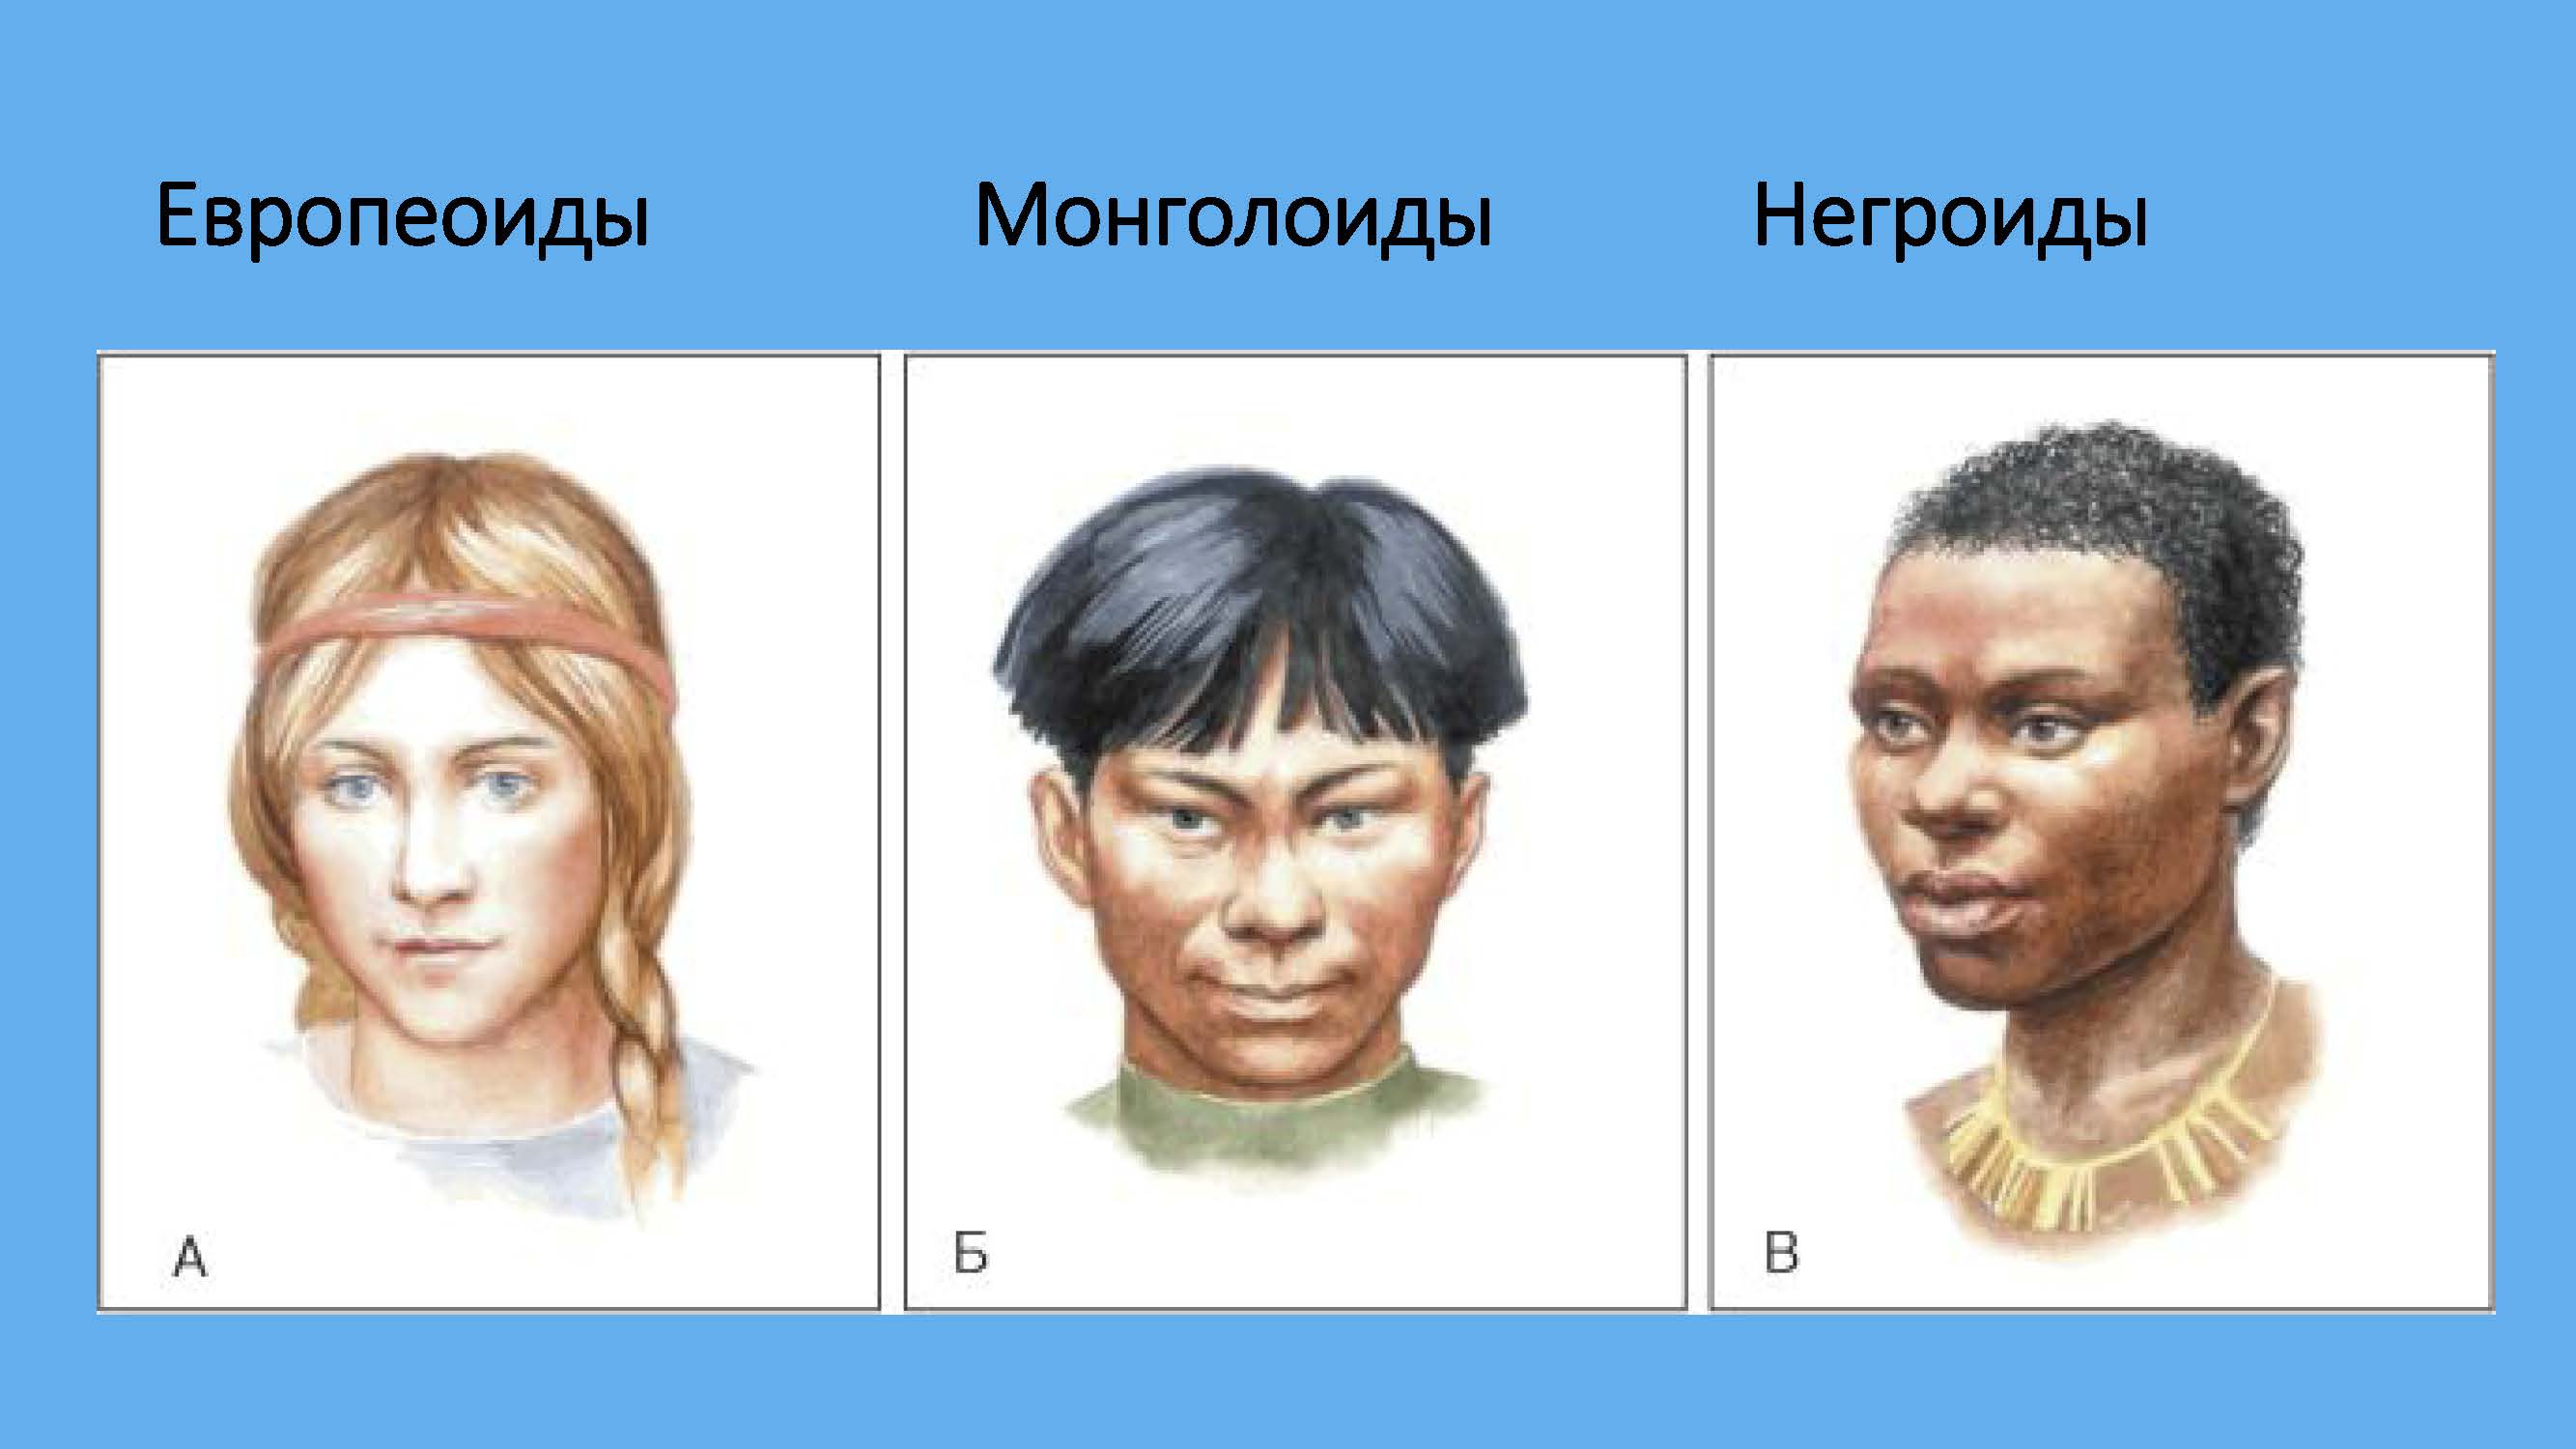 Человеческие расы европеоидная монголоидная негроидная